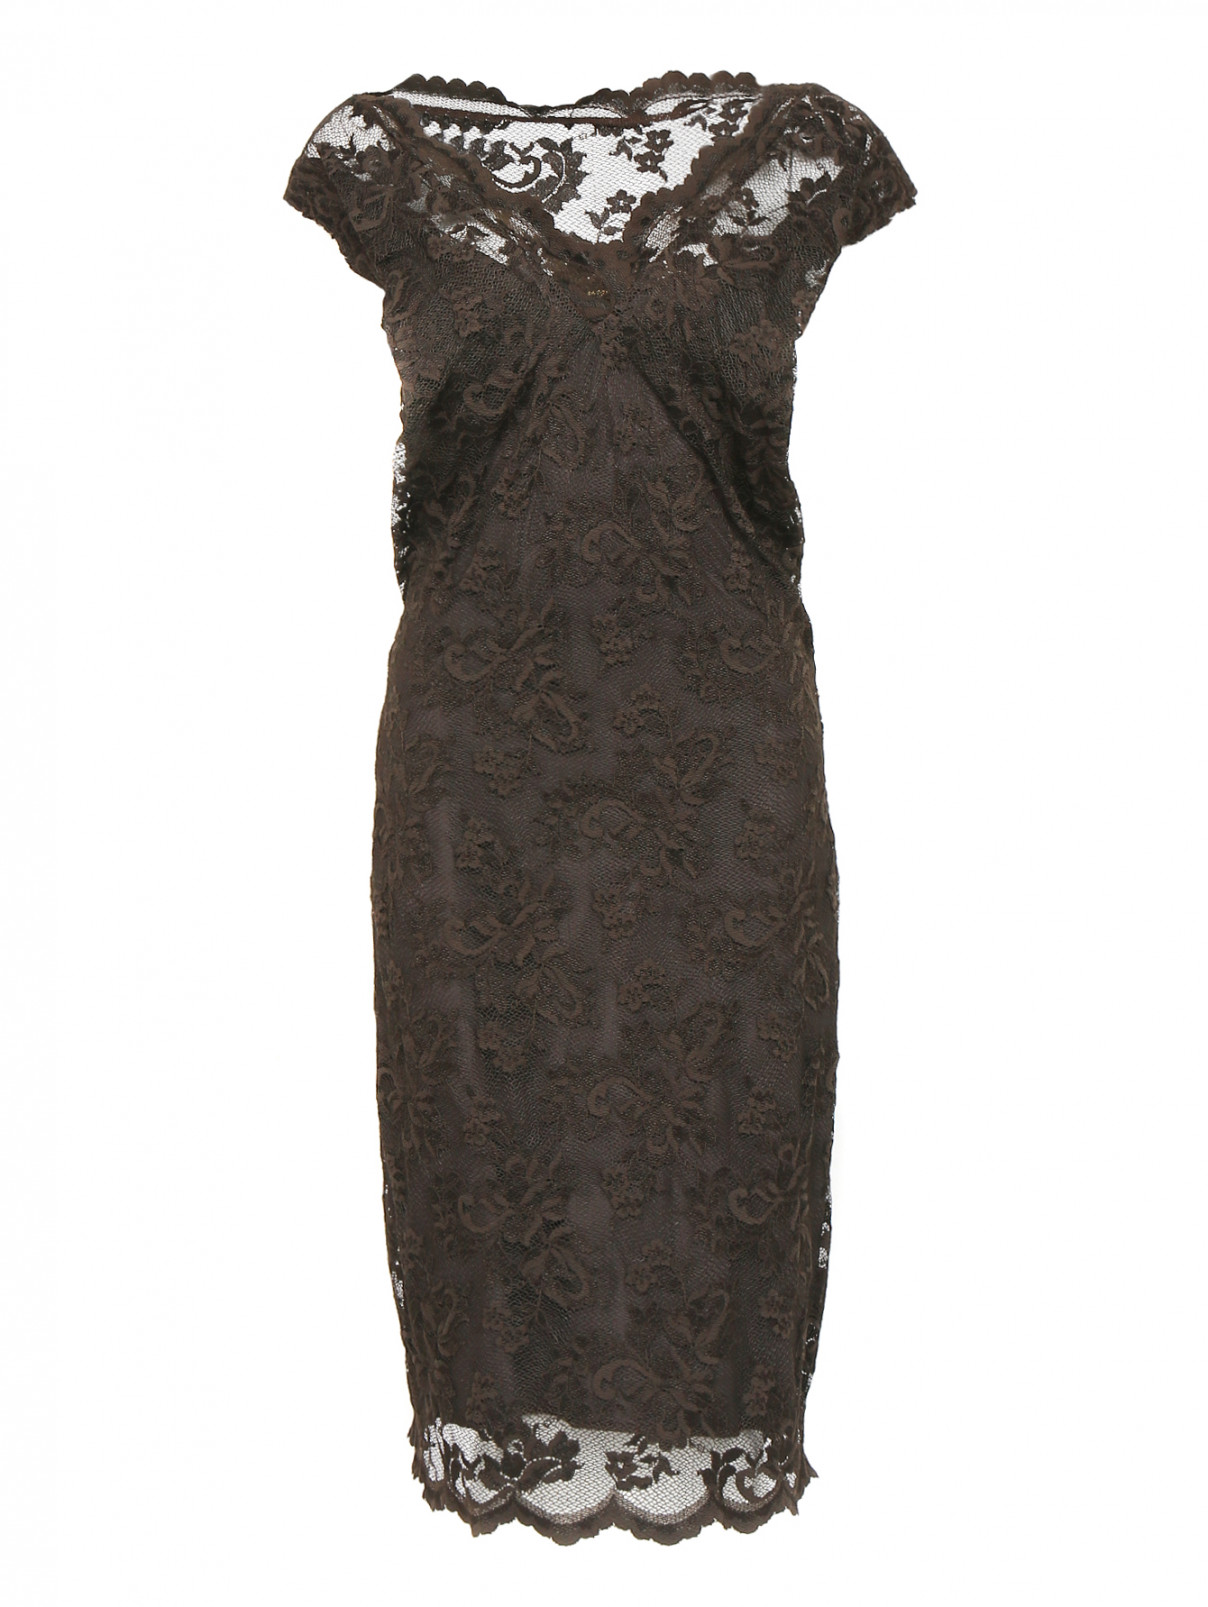 Кружевное платье-футляр Olvi's  –  Общий вид  – Цвет:  Коричневый